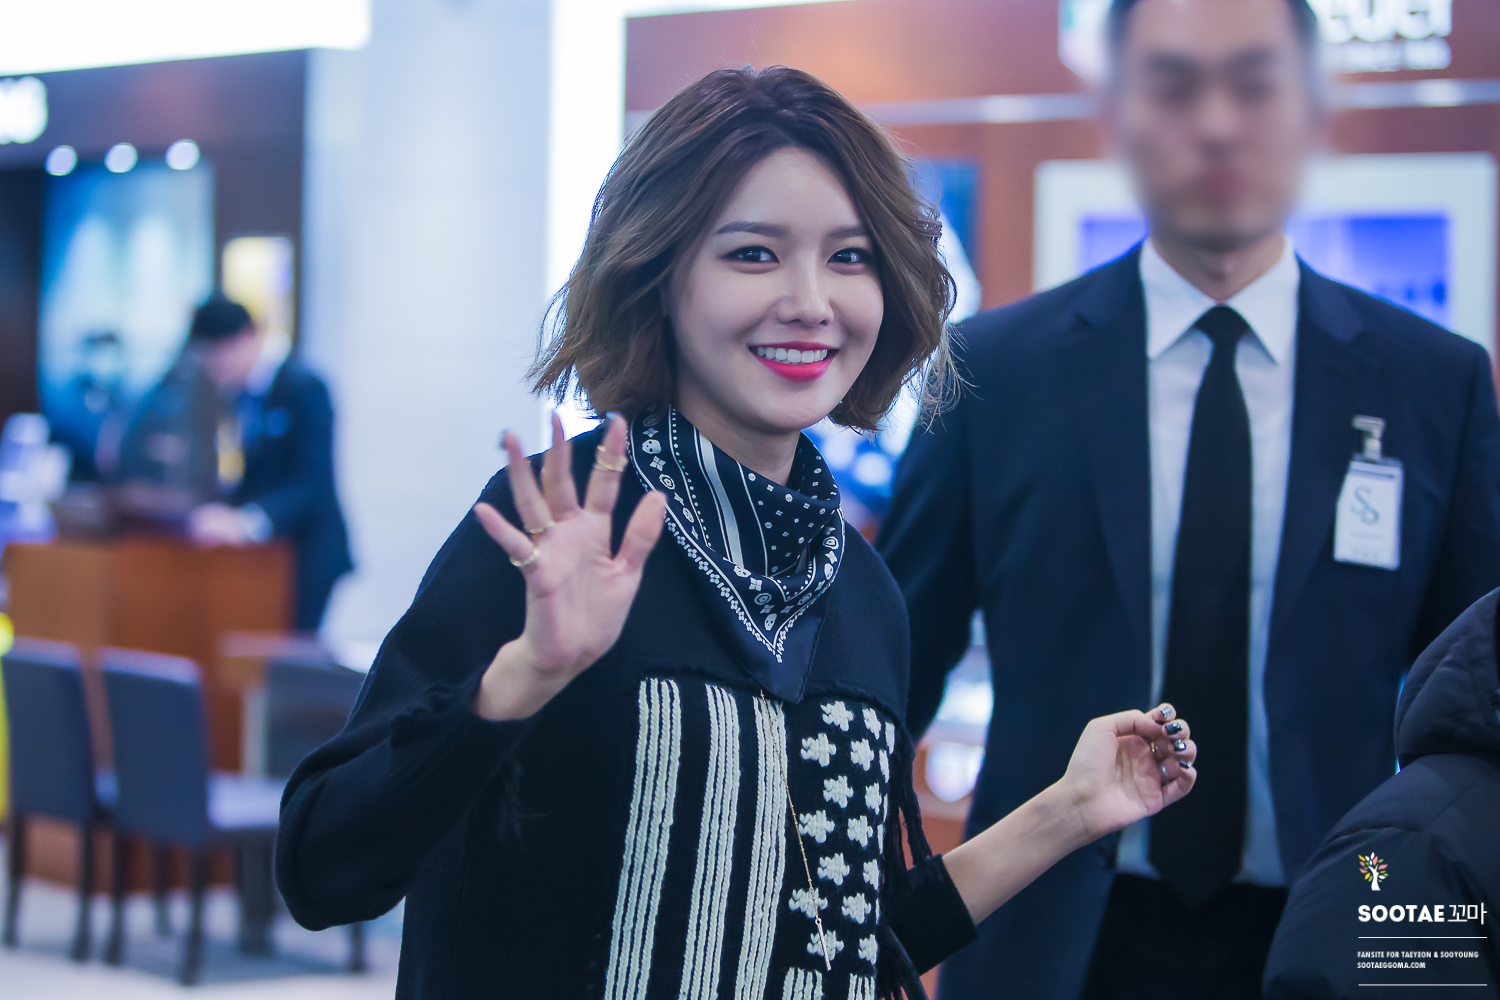  [PIC][27-11-2015]SooYoung tham dự buổi Fansign cho thương hiệu "COACH" tại Lotte Department Store Busan vào trưa nay 23208605819_3da39fa519_o